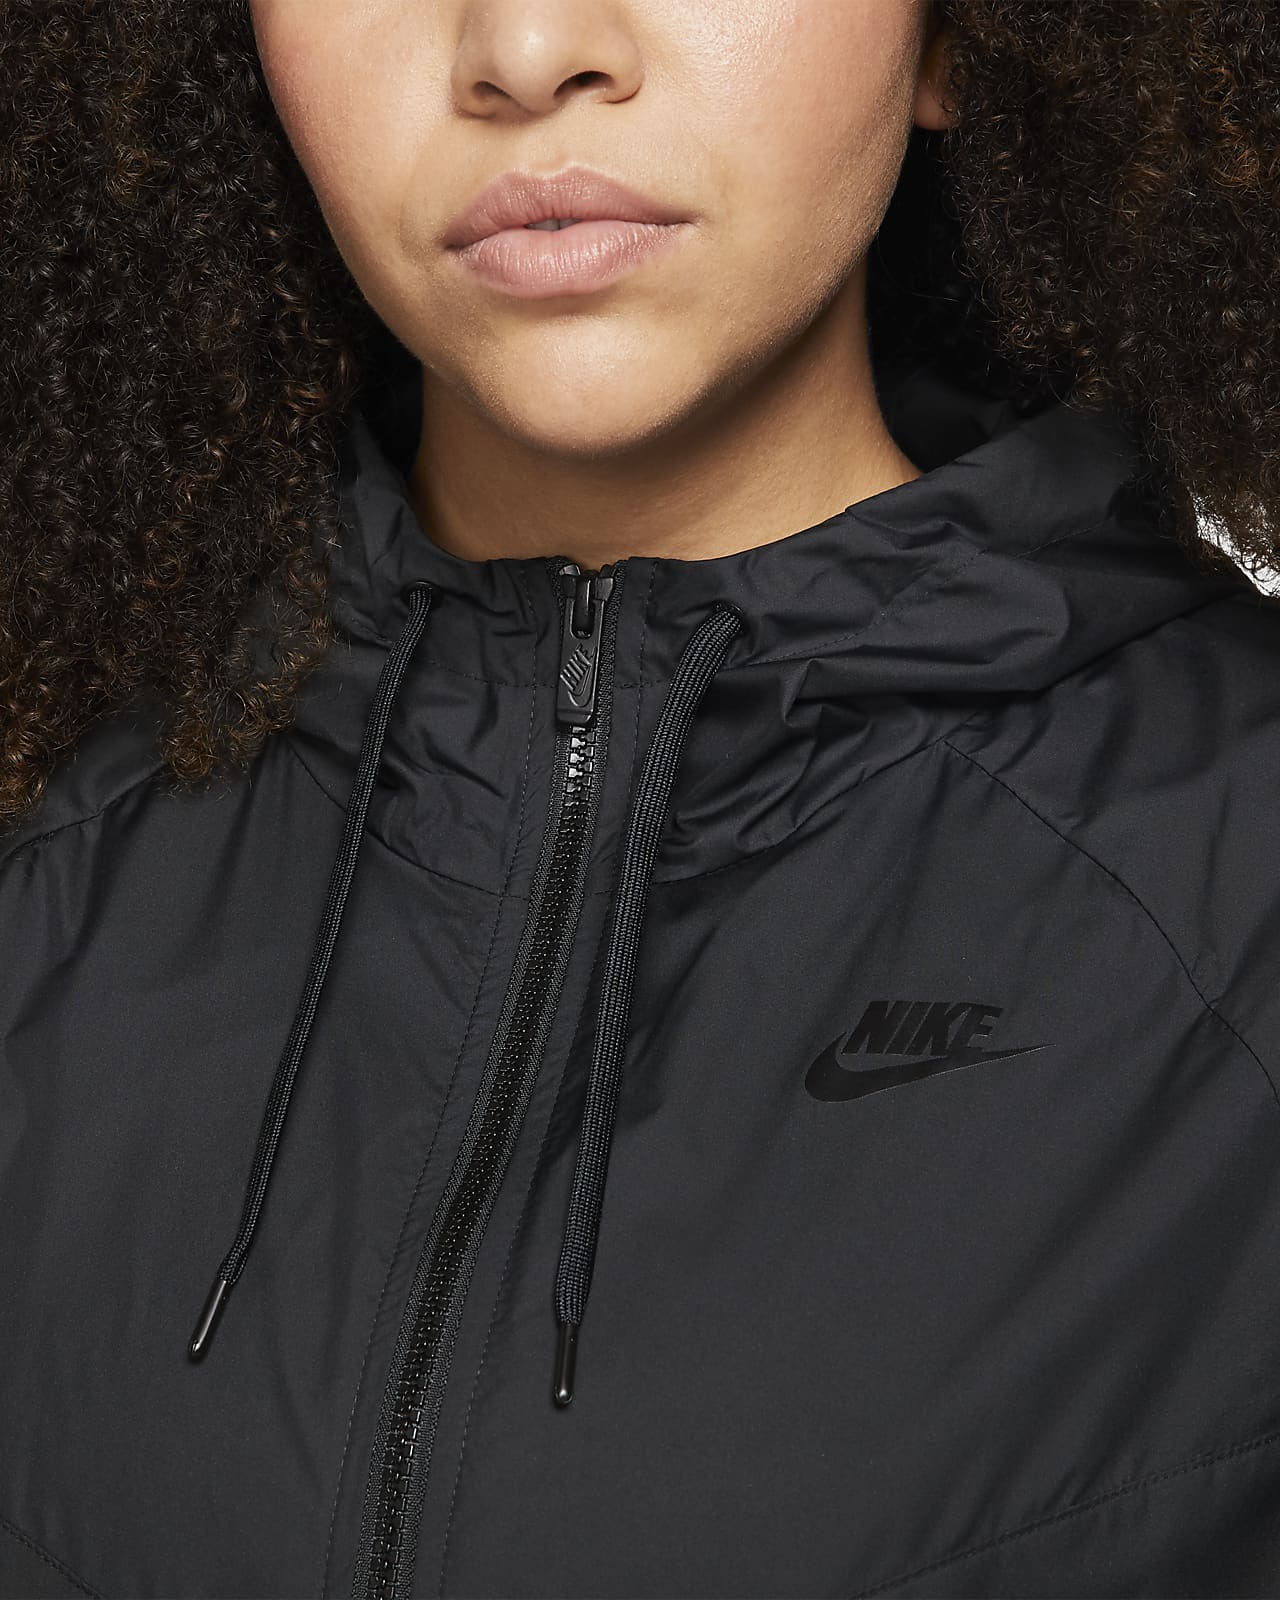 Nike Sportswear Windrunner Women's 